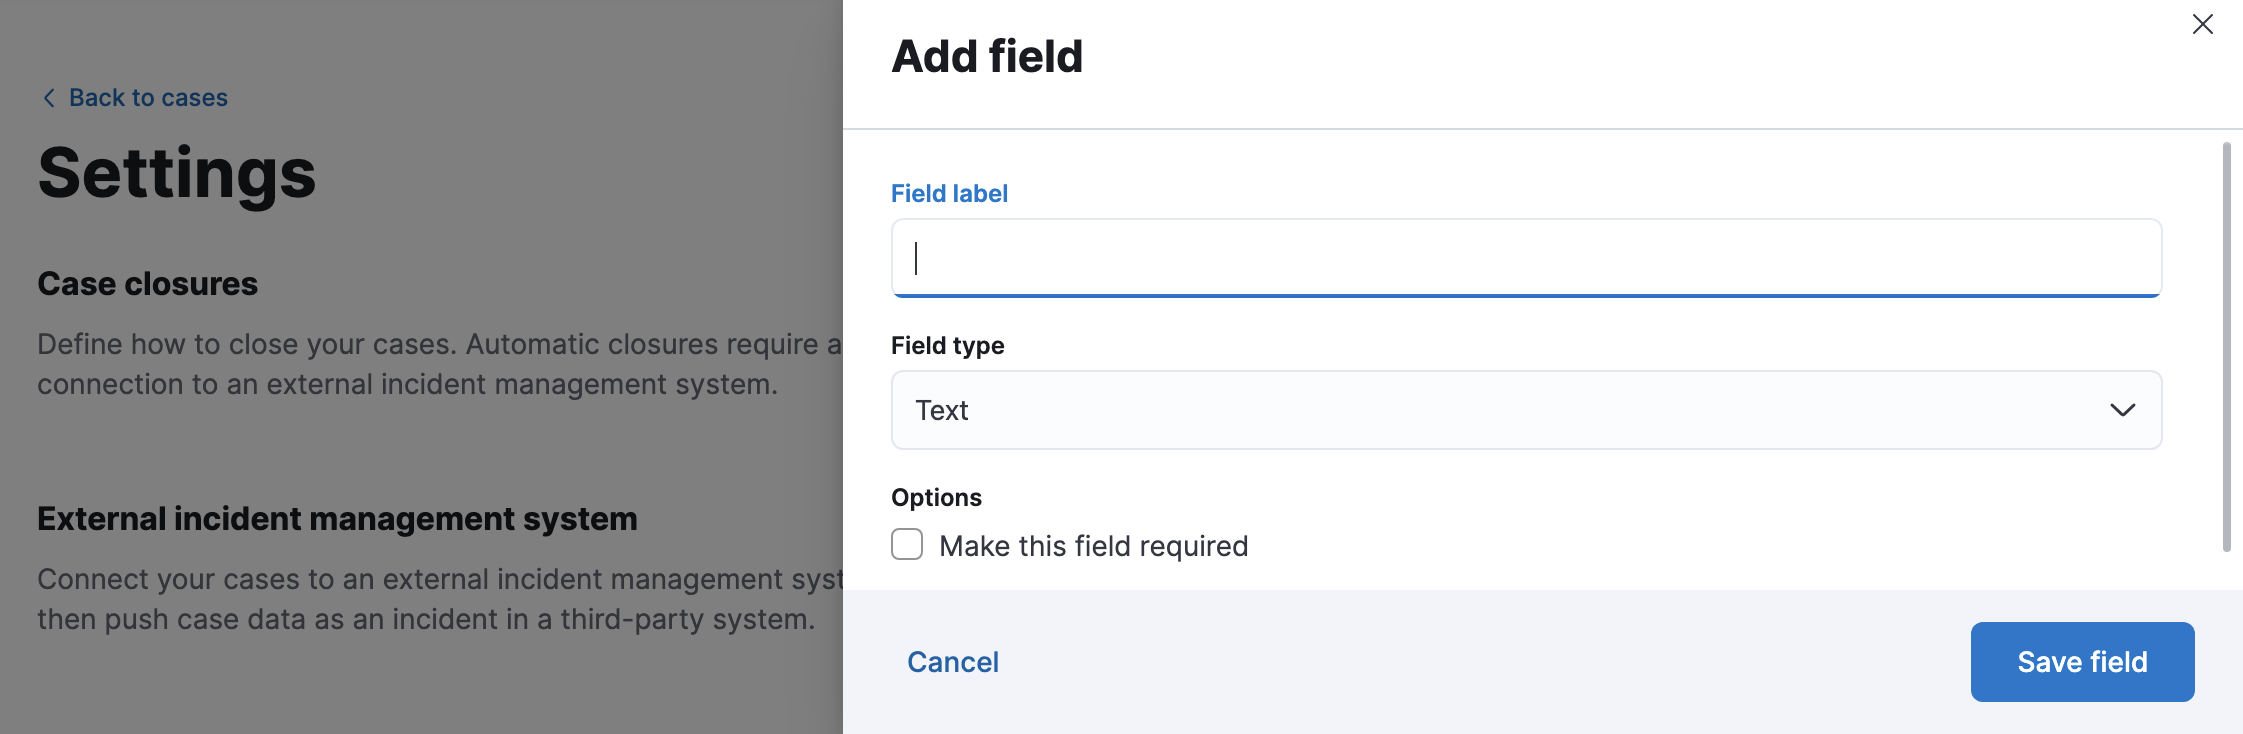 Add a custom field in case settings